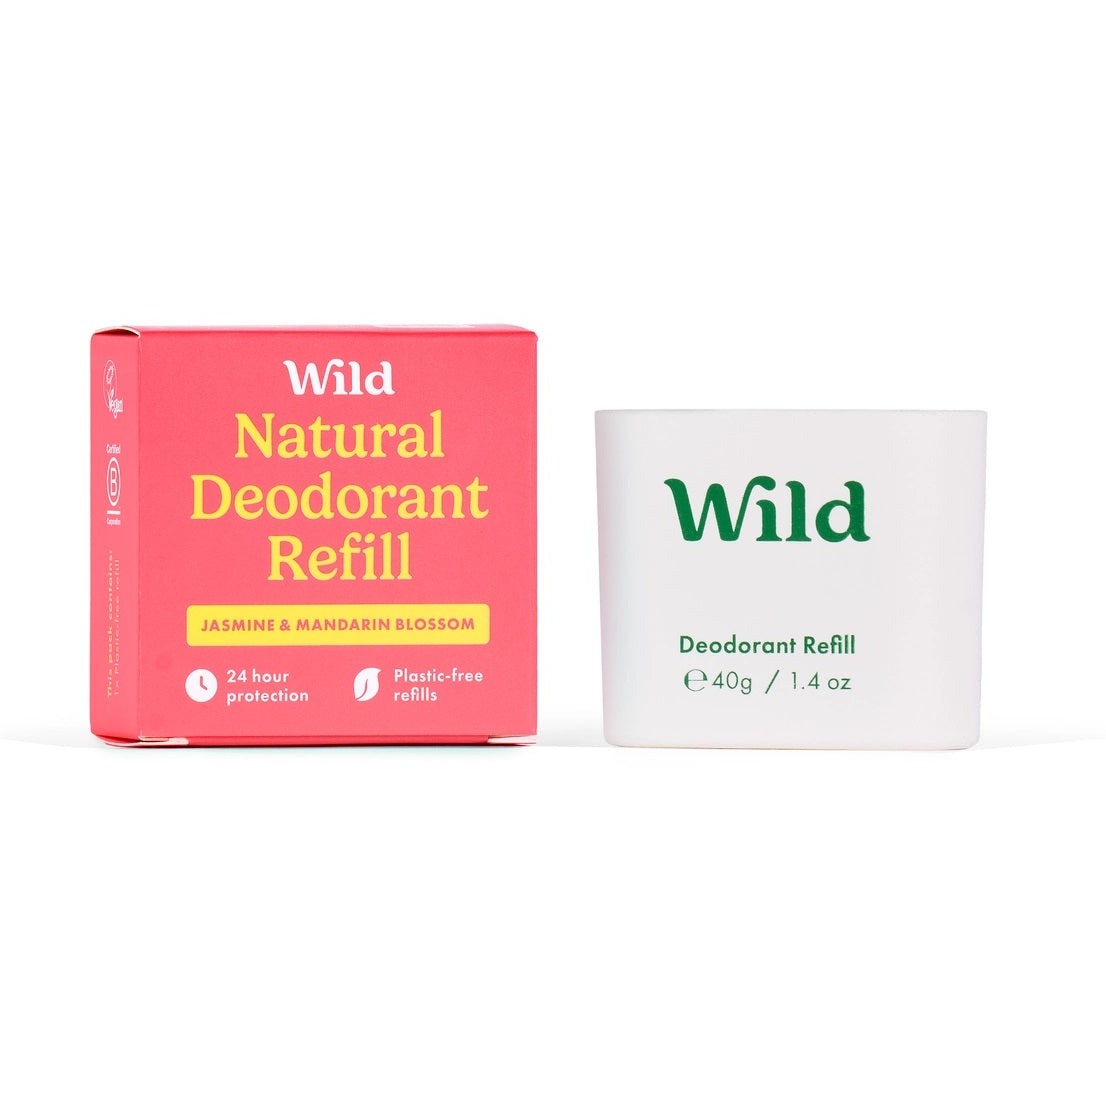 Wild Deodorant Refill - Jasmine & Mandarin Blossom